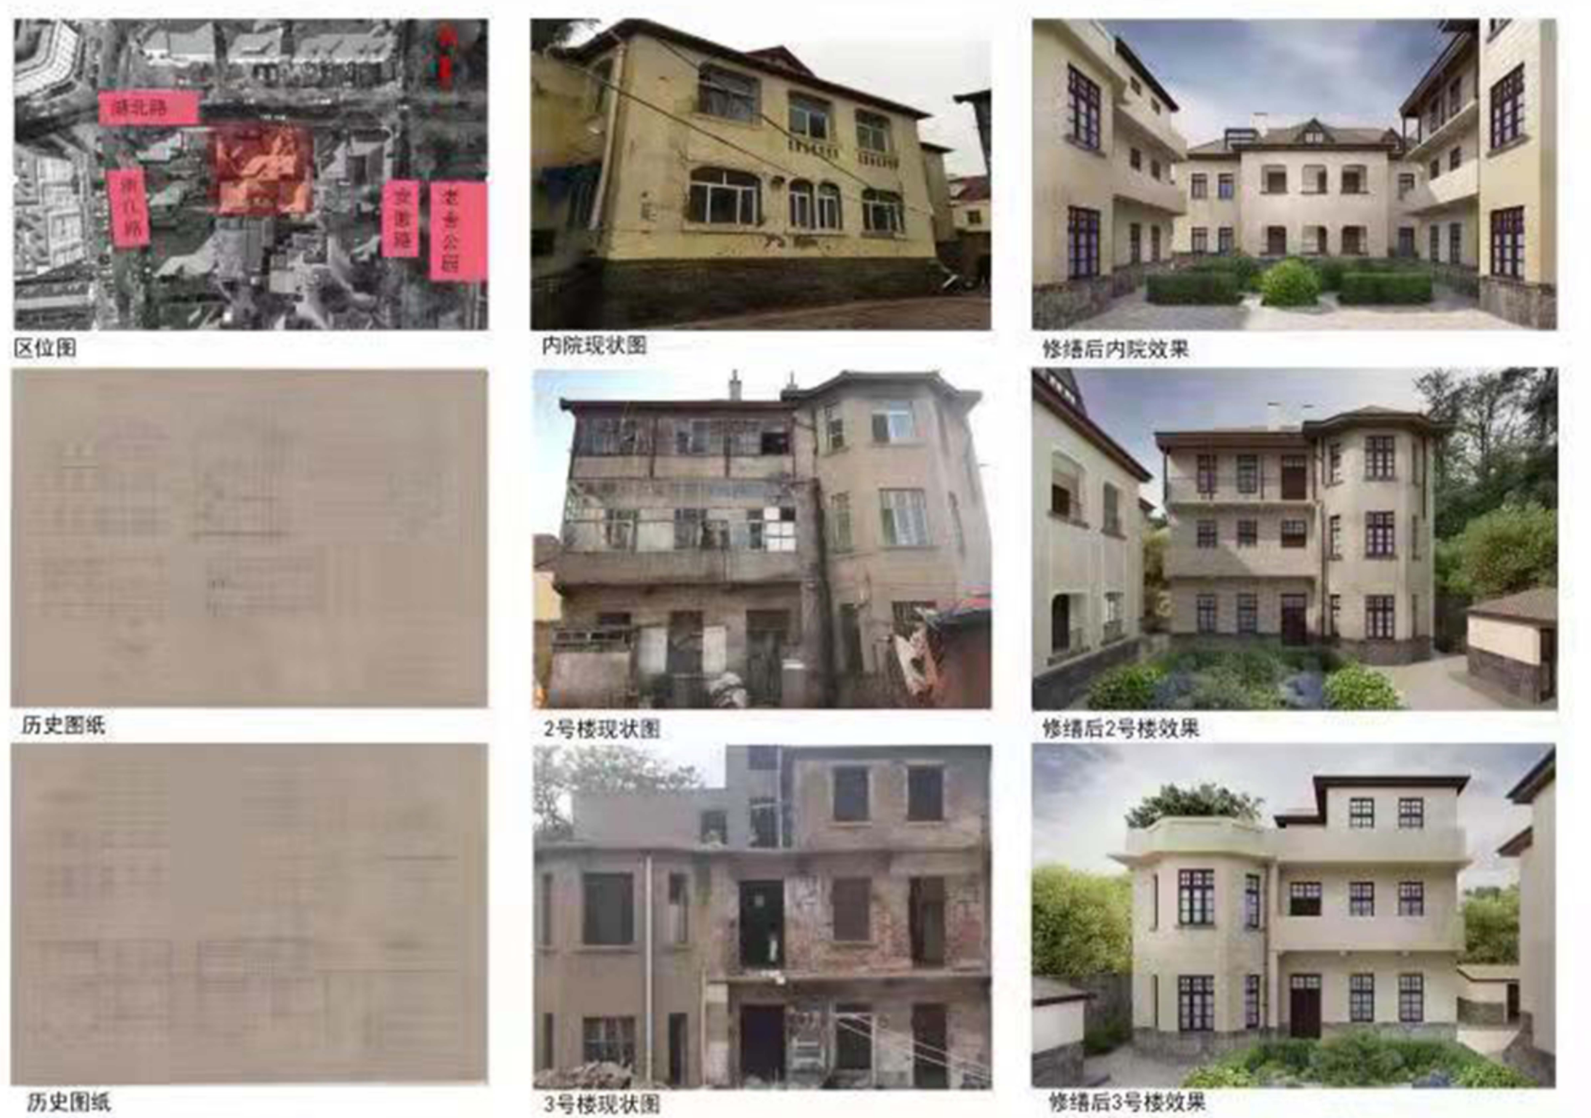 中山路历史文化街区一地块修缮方案发布：将导入酒店、餐饮等功能